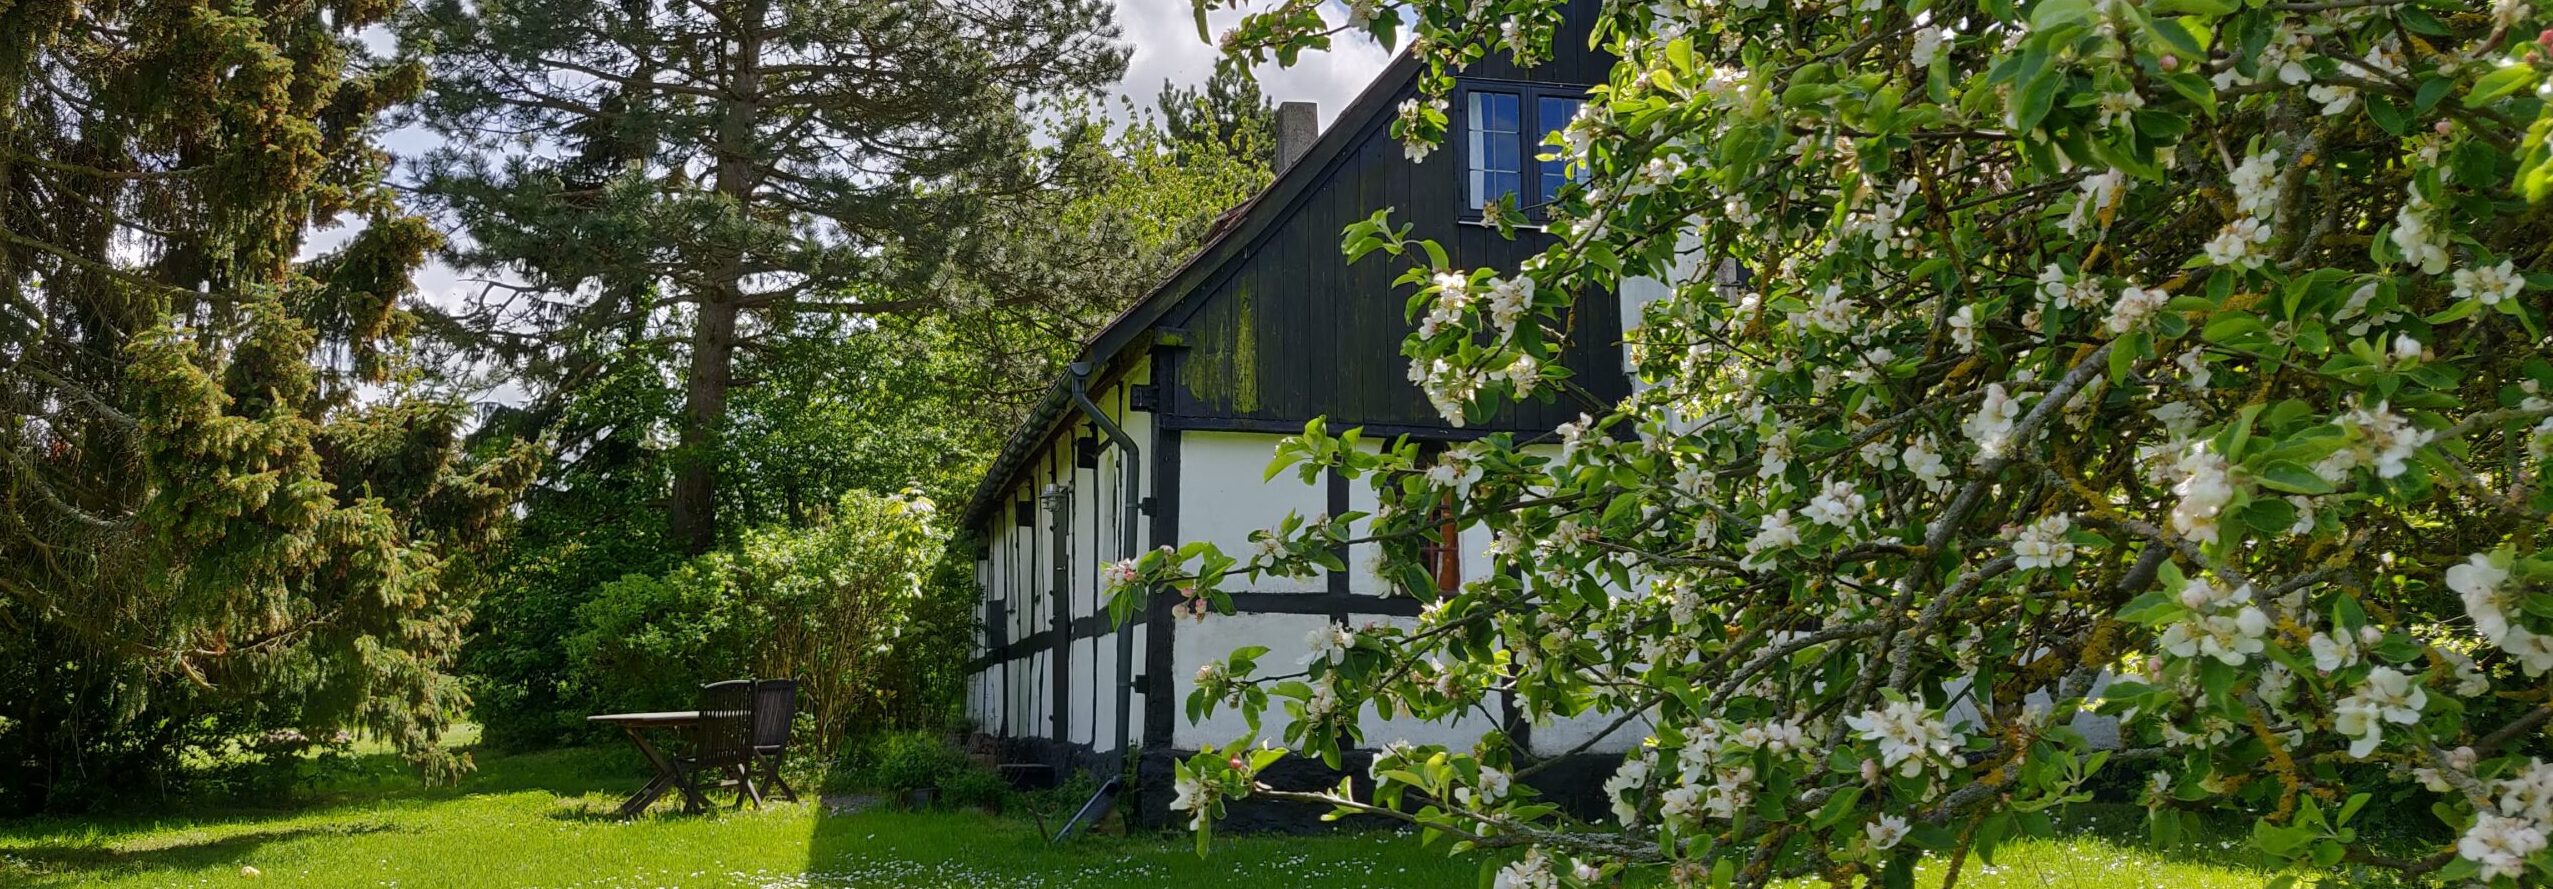 Stavehøls Bauernhaus